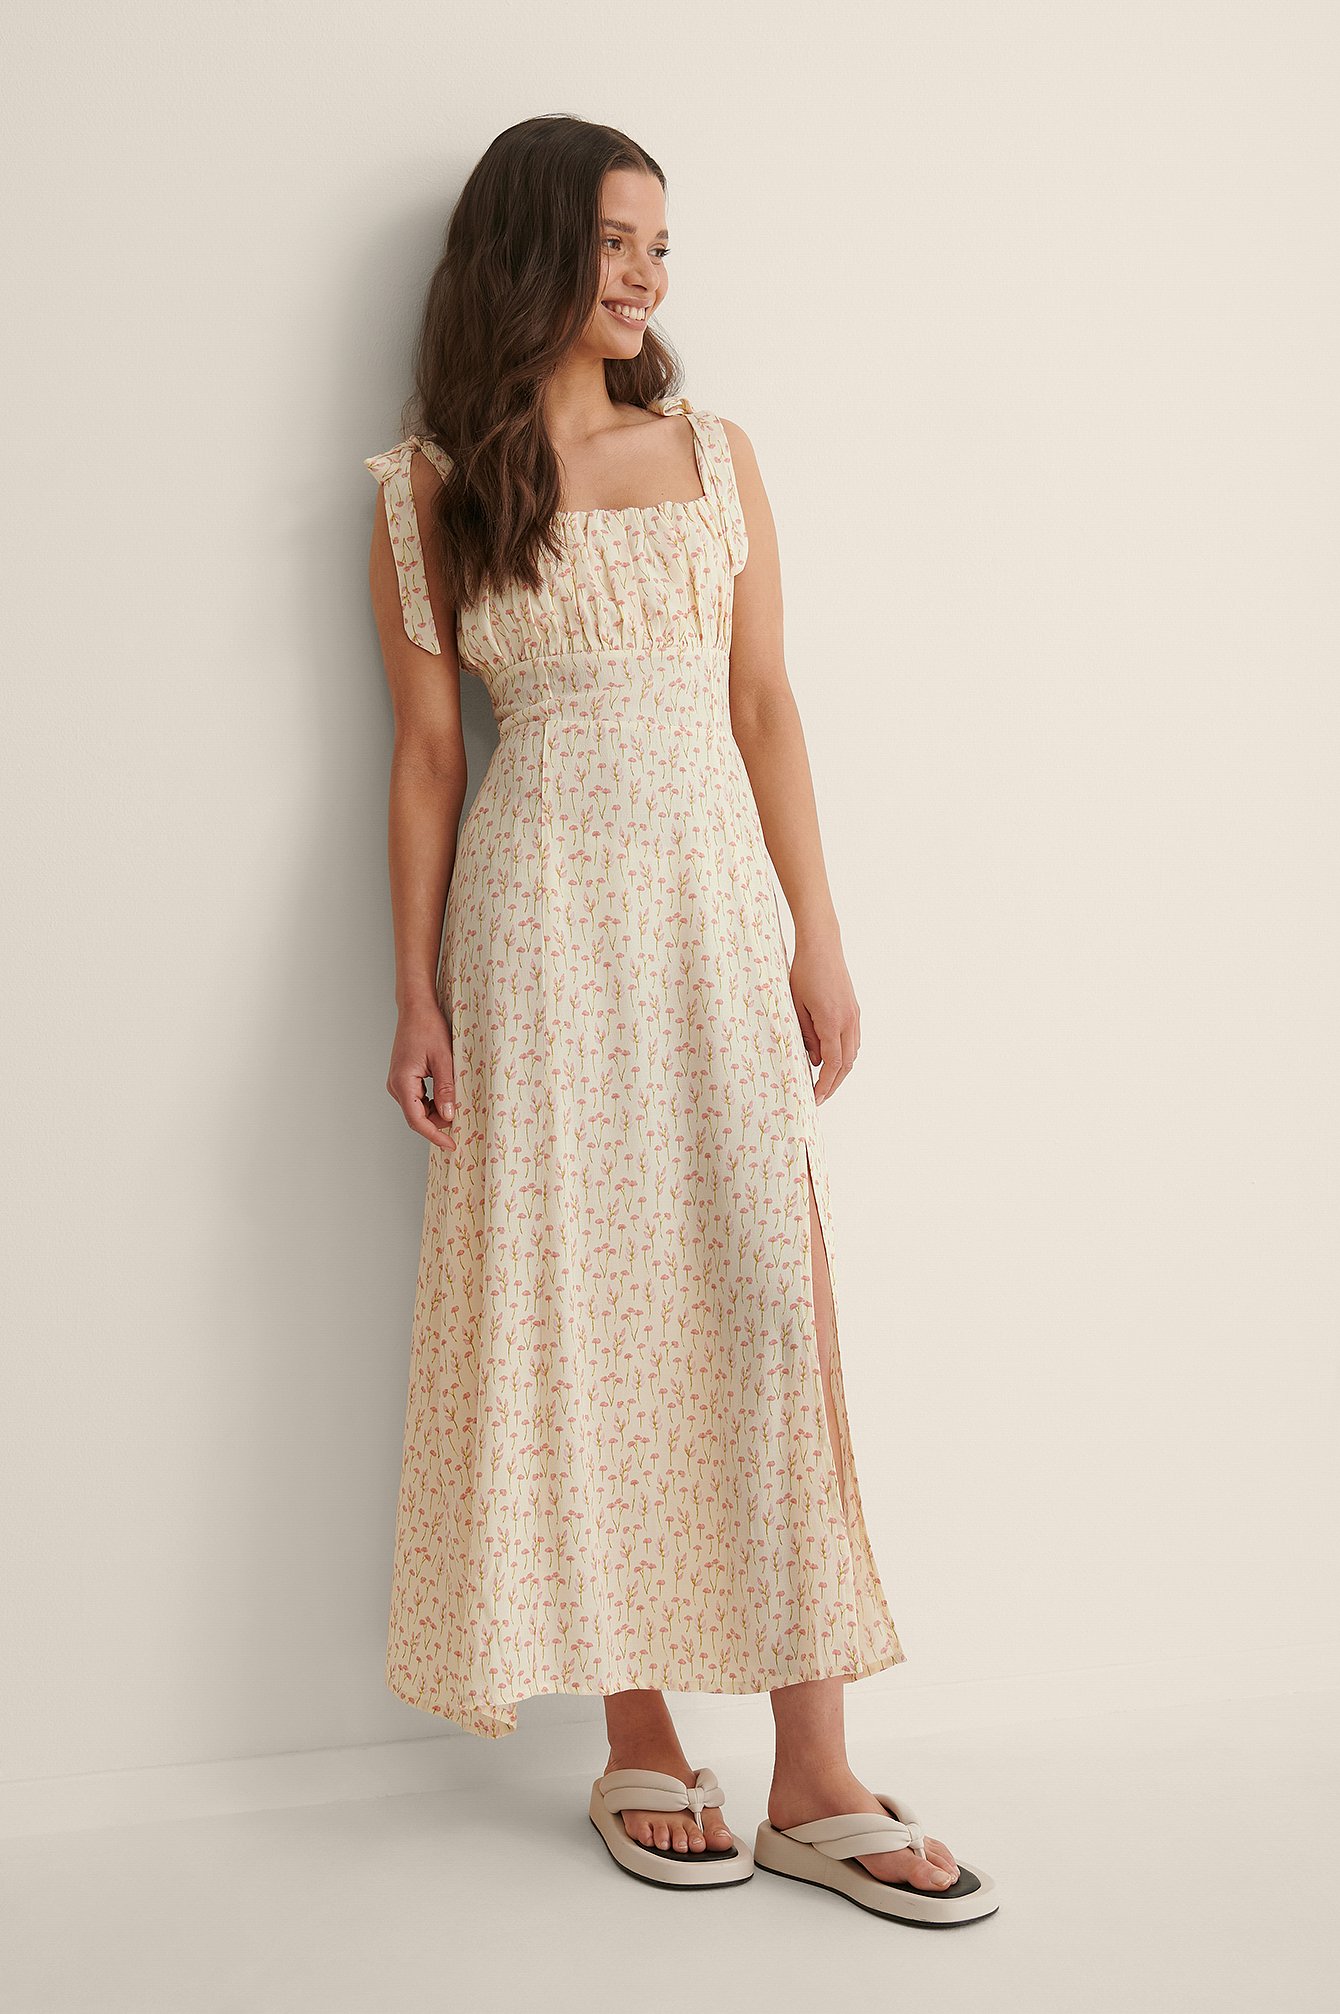 White/Print sukienka midi z ramiączkami